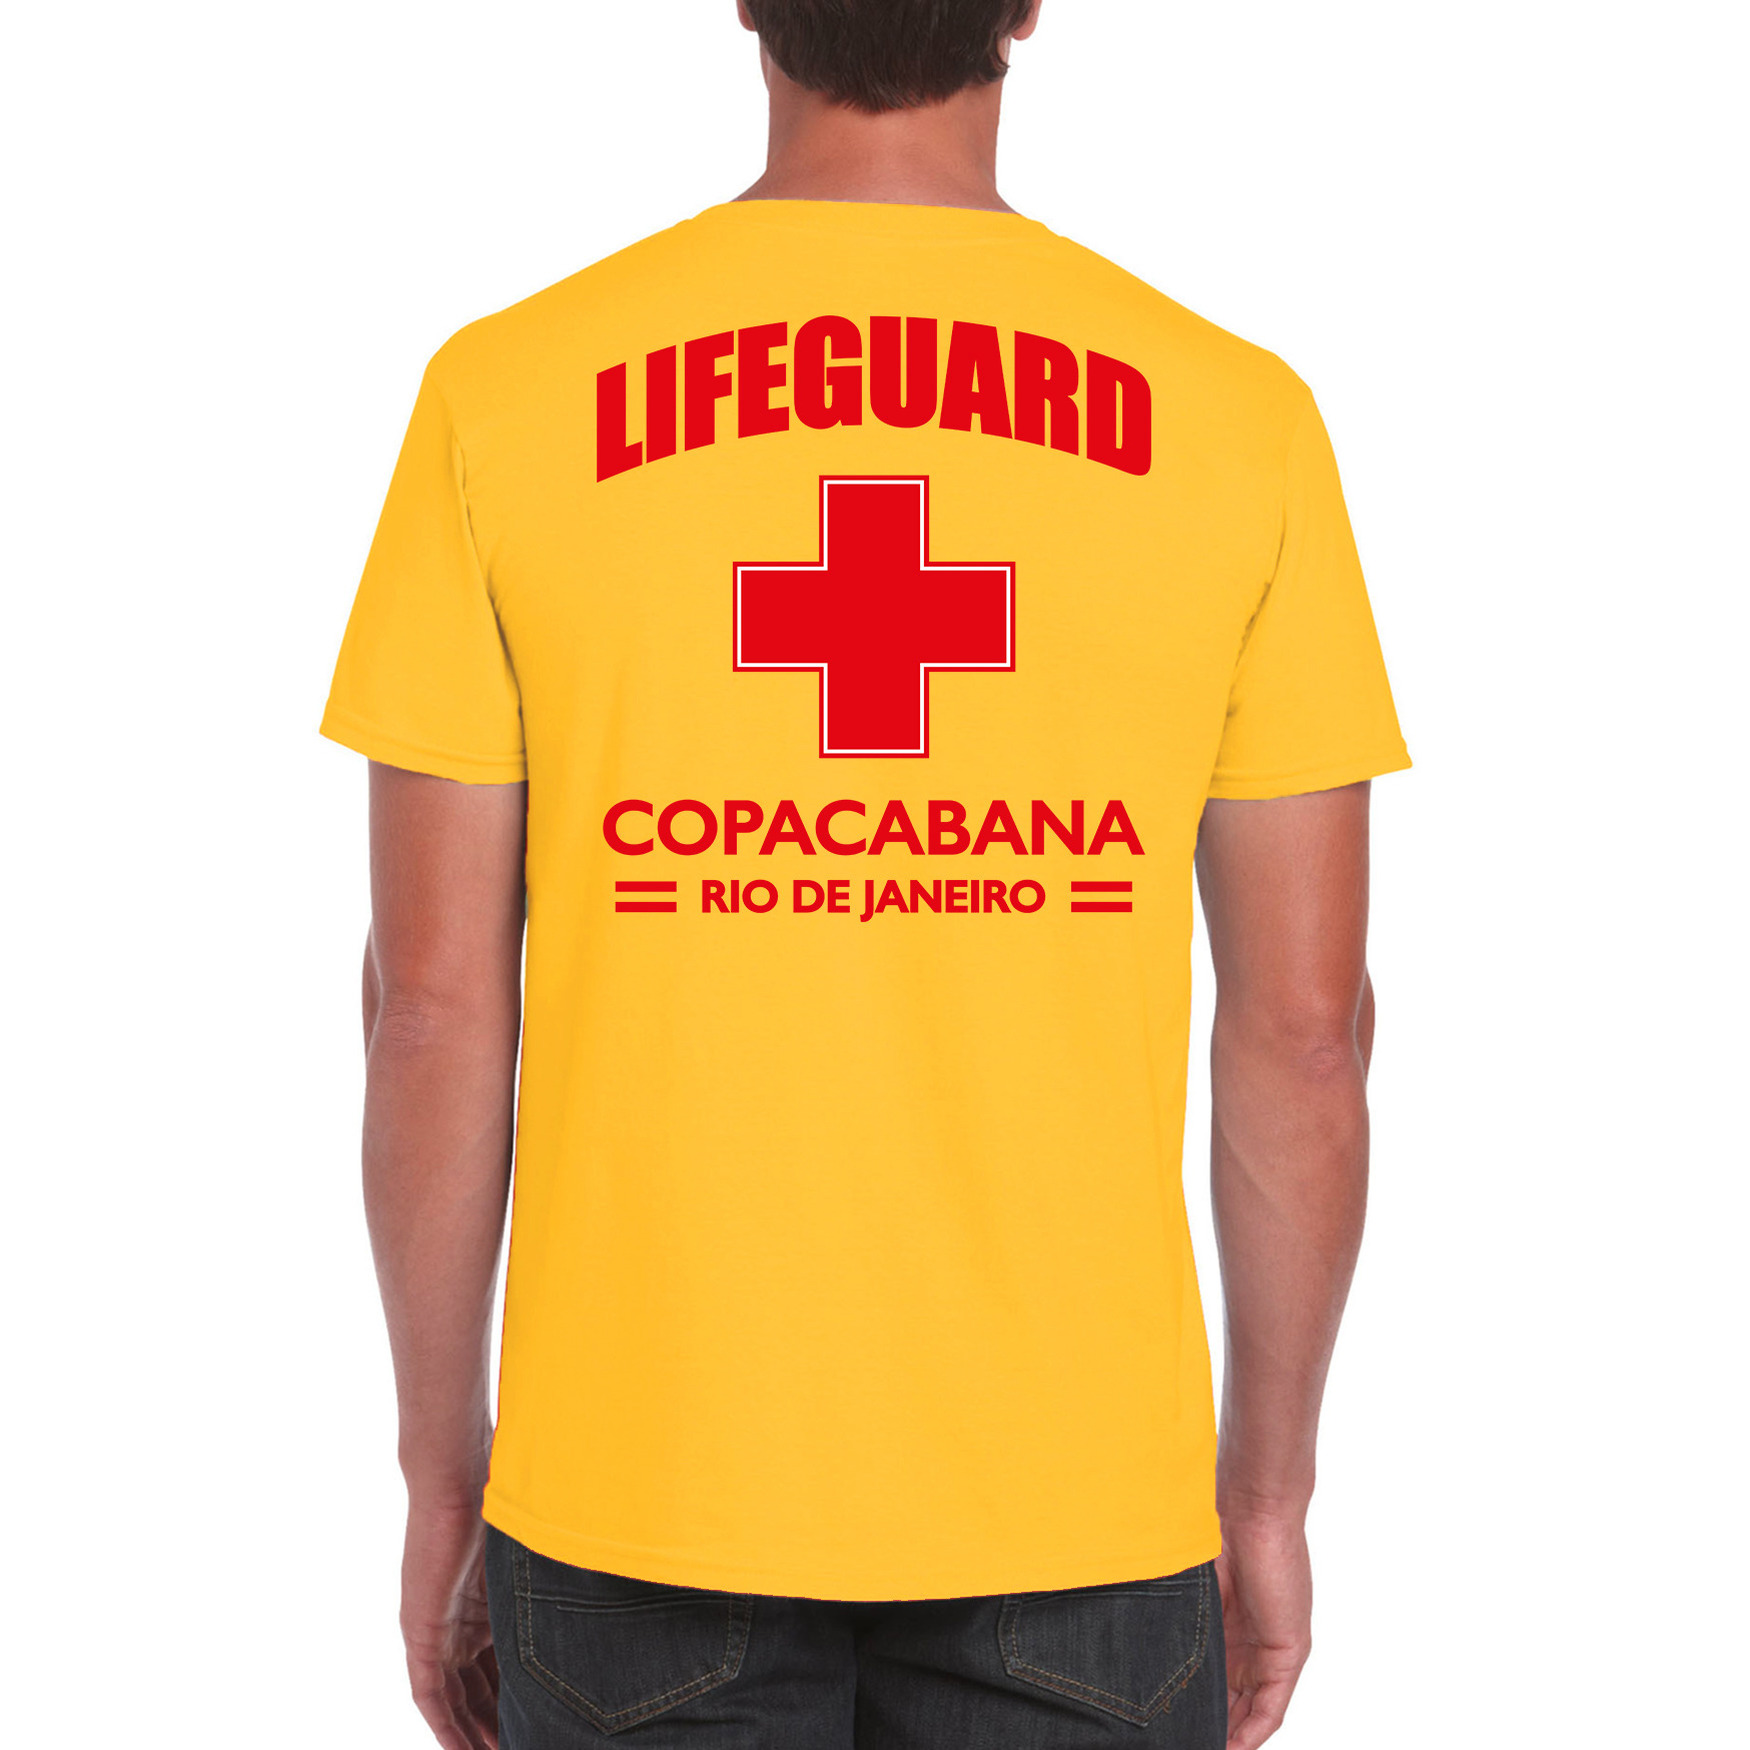 Lifeguard- strandwacht verkleed t-shirt-shirt Lifeguard Copacabana Rio De Janeiro geel voor heren